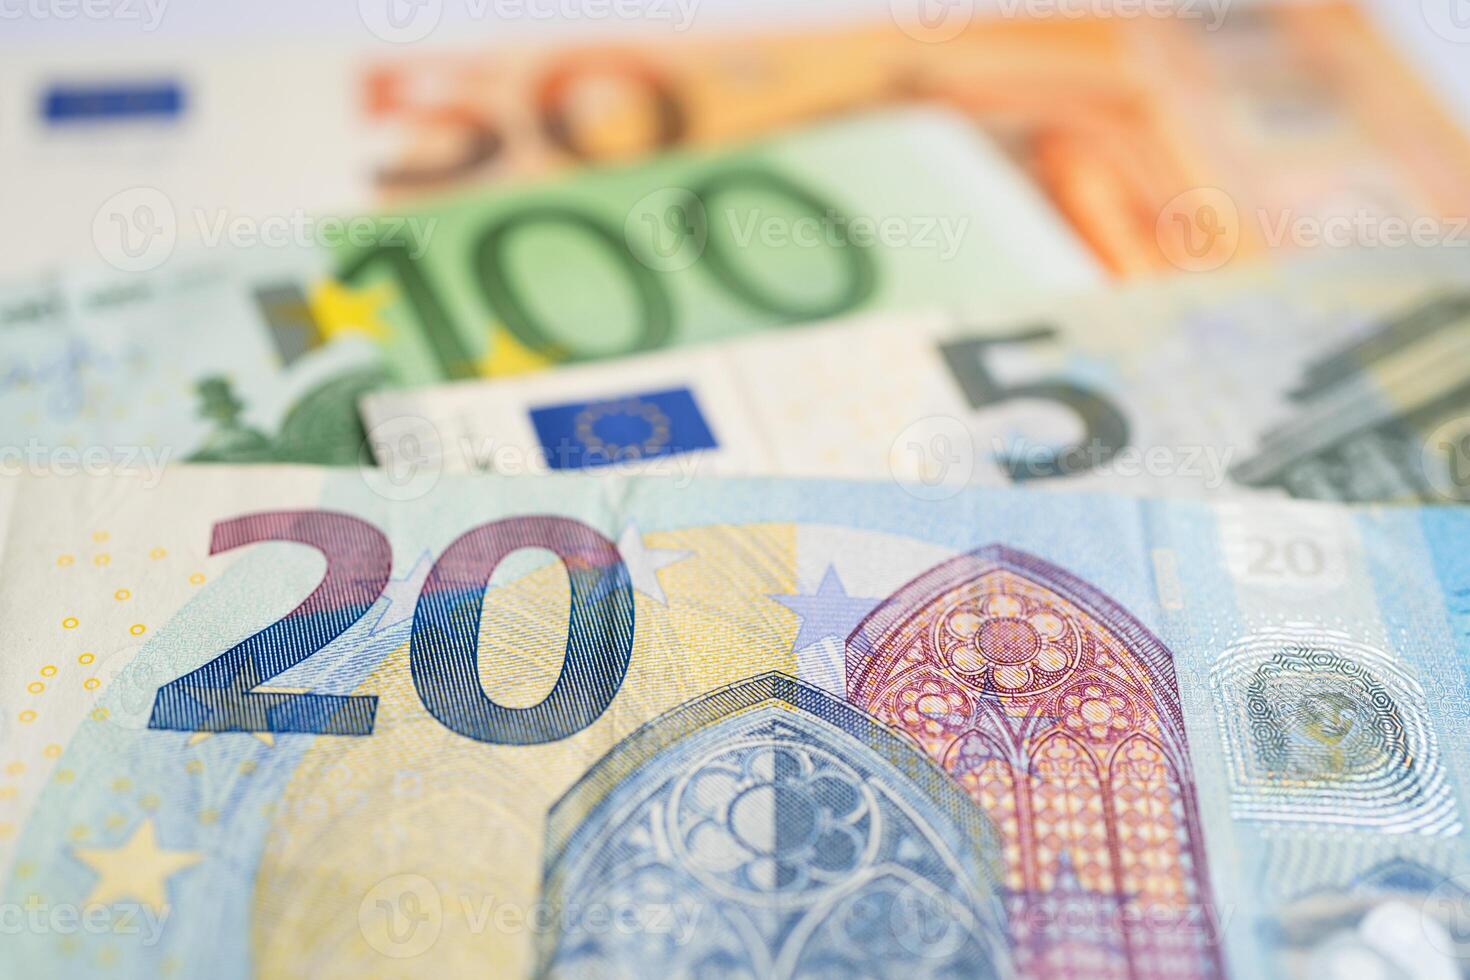 euro bankbiljet, Europa geld, economie financiën uitwisseling handel investering concept. foto